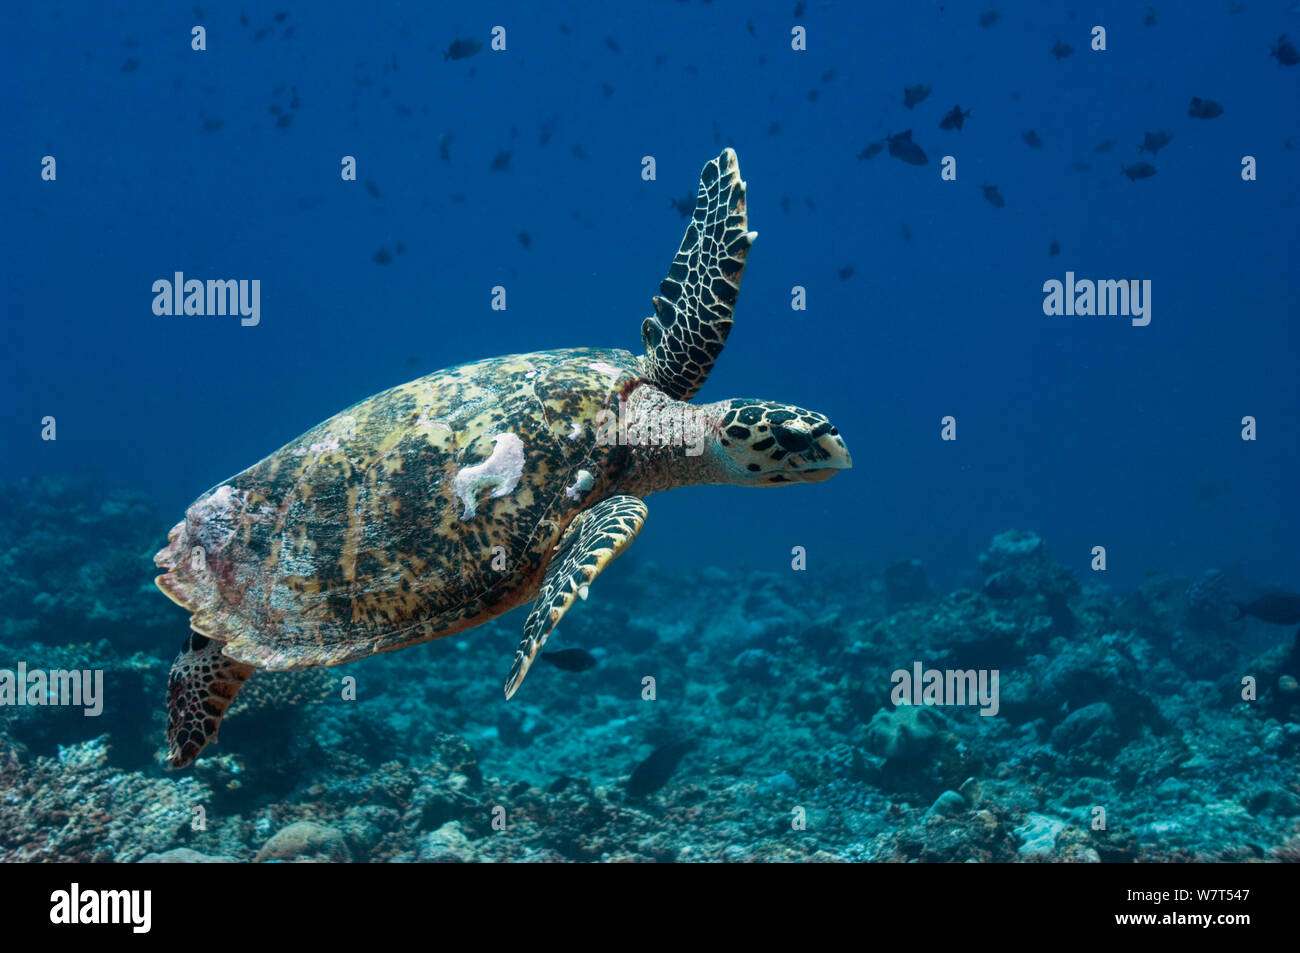 La tortuga carey (Eretmochelys imbricata) nadando a lo largo de arrecifes de coral. Maldivas. Foto de stock